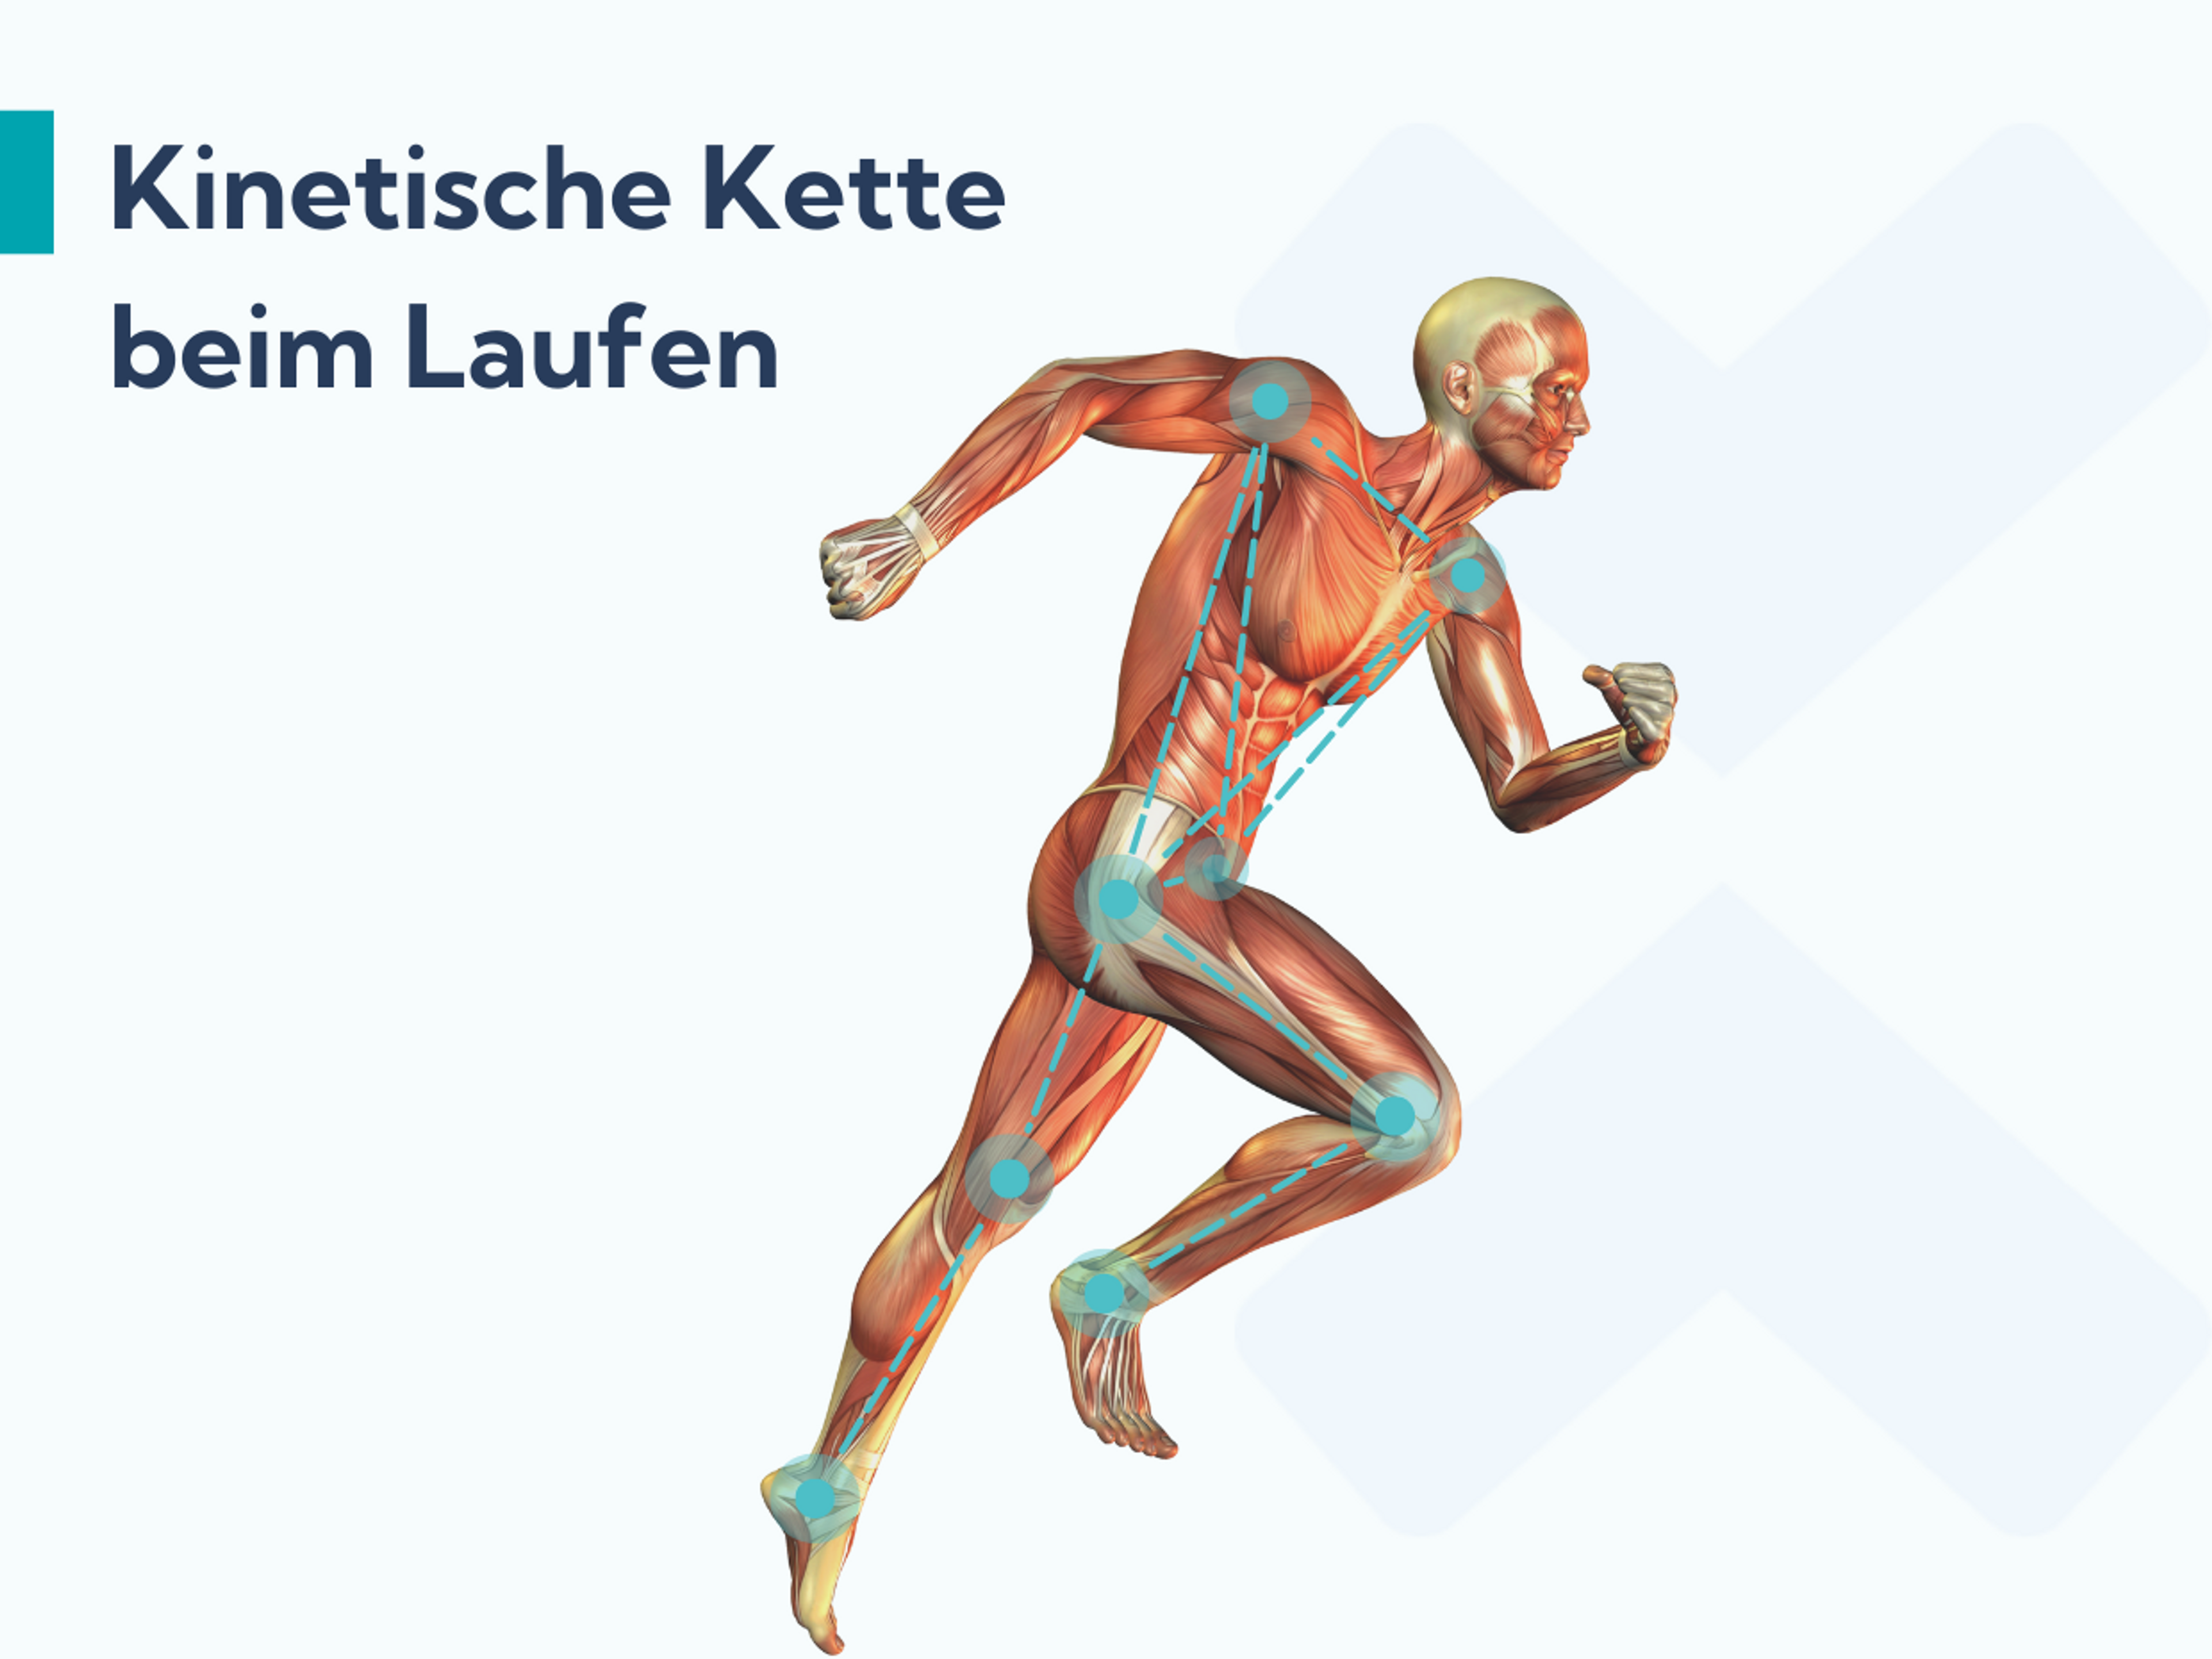 Bei Plantarfasziitis helfen Hüftübungen. Sie sorgen dafür, dass die kinetische Kette beim Laufen besser funktioniert.